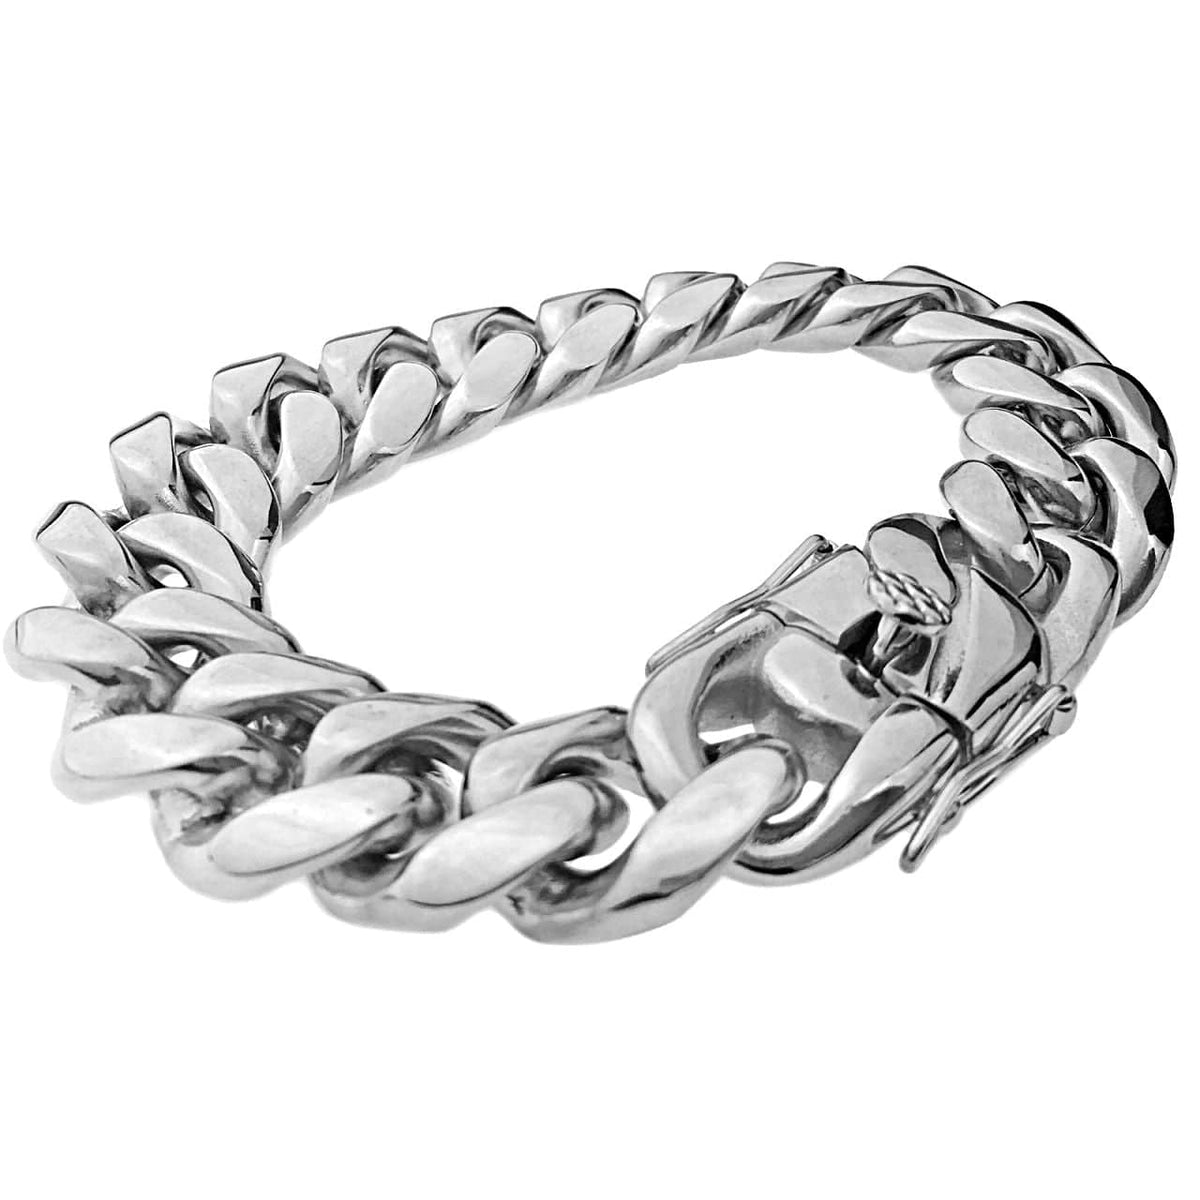 Silver 316L Stainless Steel Bracelet 7.5